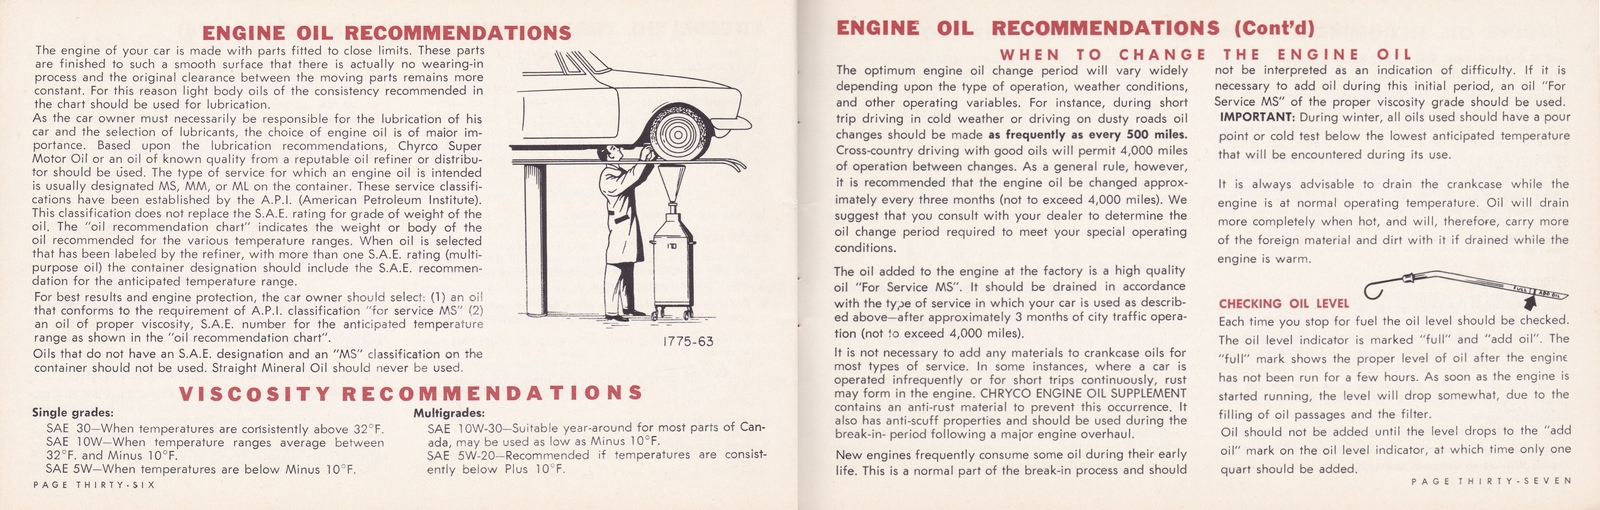 n_1964 Chrysler Owner's Manual (Cdn)-36-37.jpg